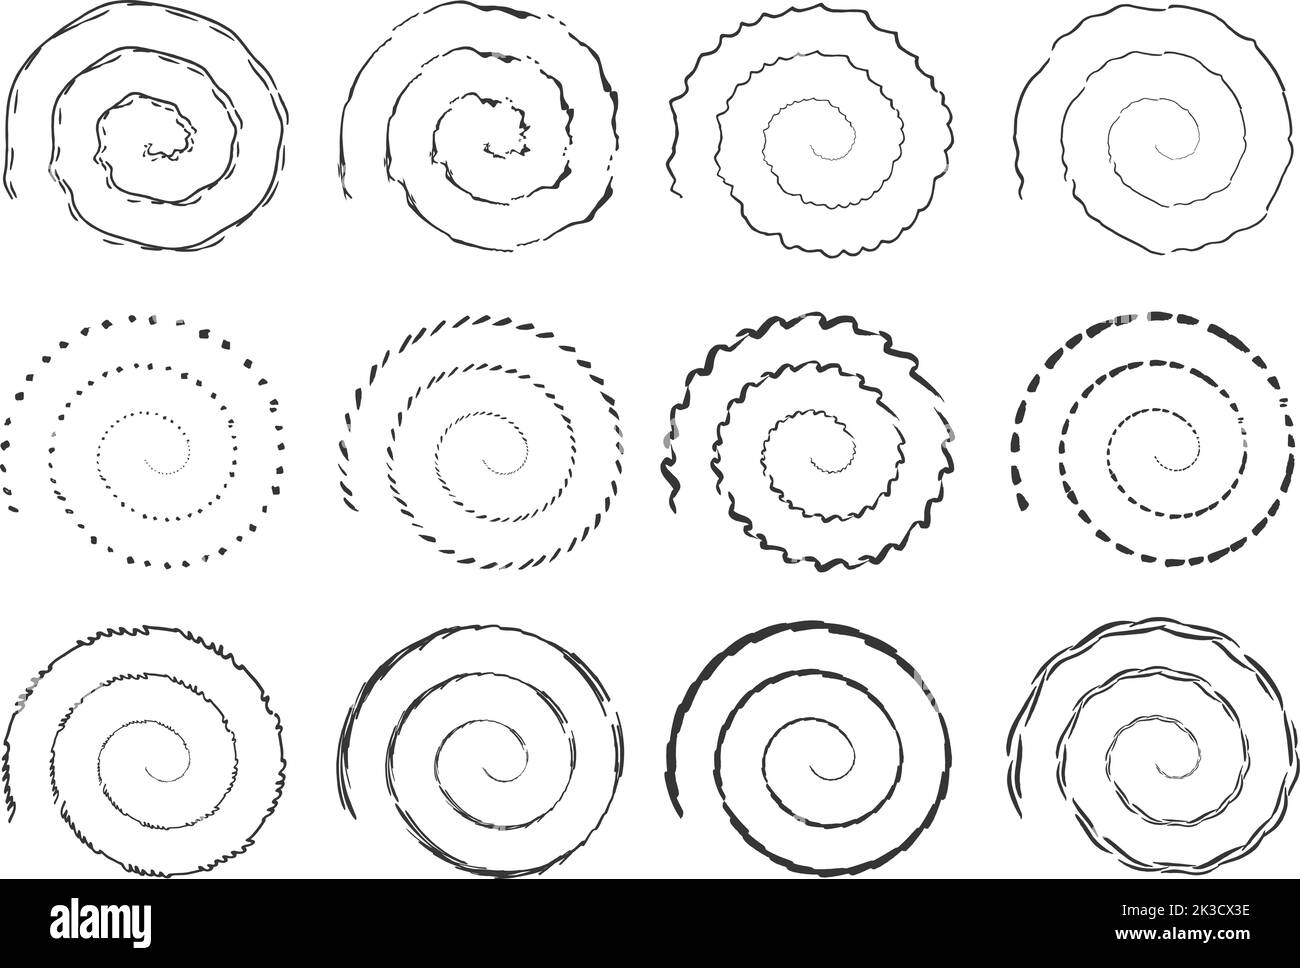 Grunge Black Spirals Kollektion. Isolierte Tintenpinsel kreisen um Elemente. Wirbeln Sie dekorative Spirale, Vektor Vortex Symbole gesetzt. Wirbelndes Design Stock Vektor